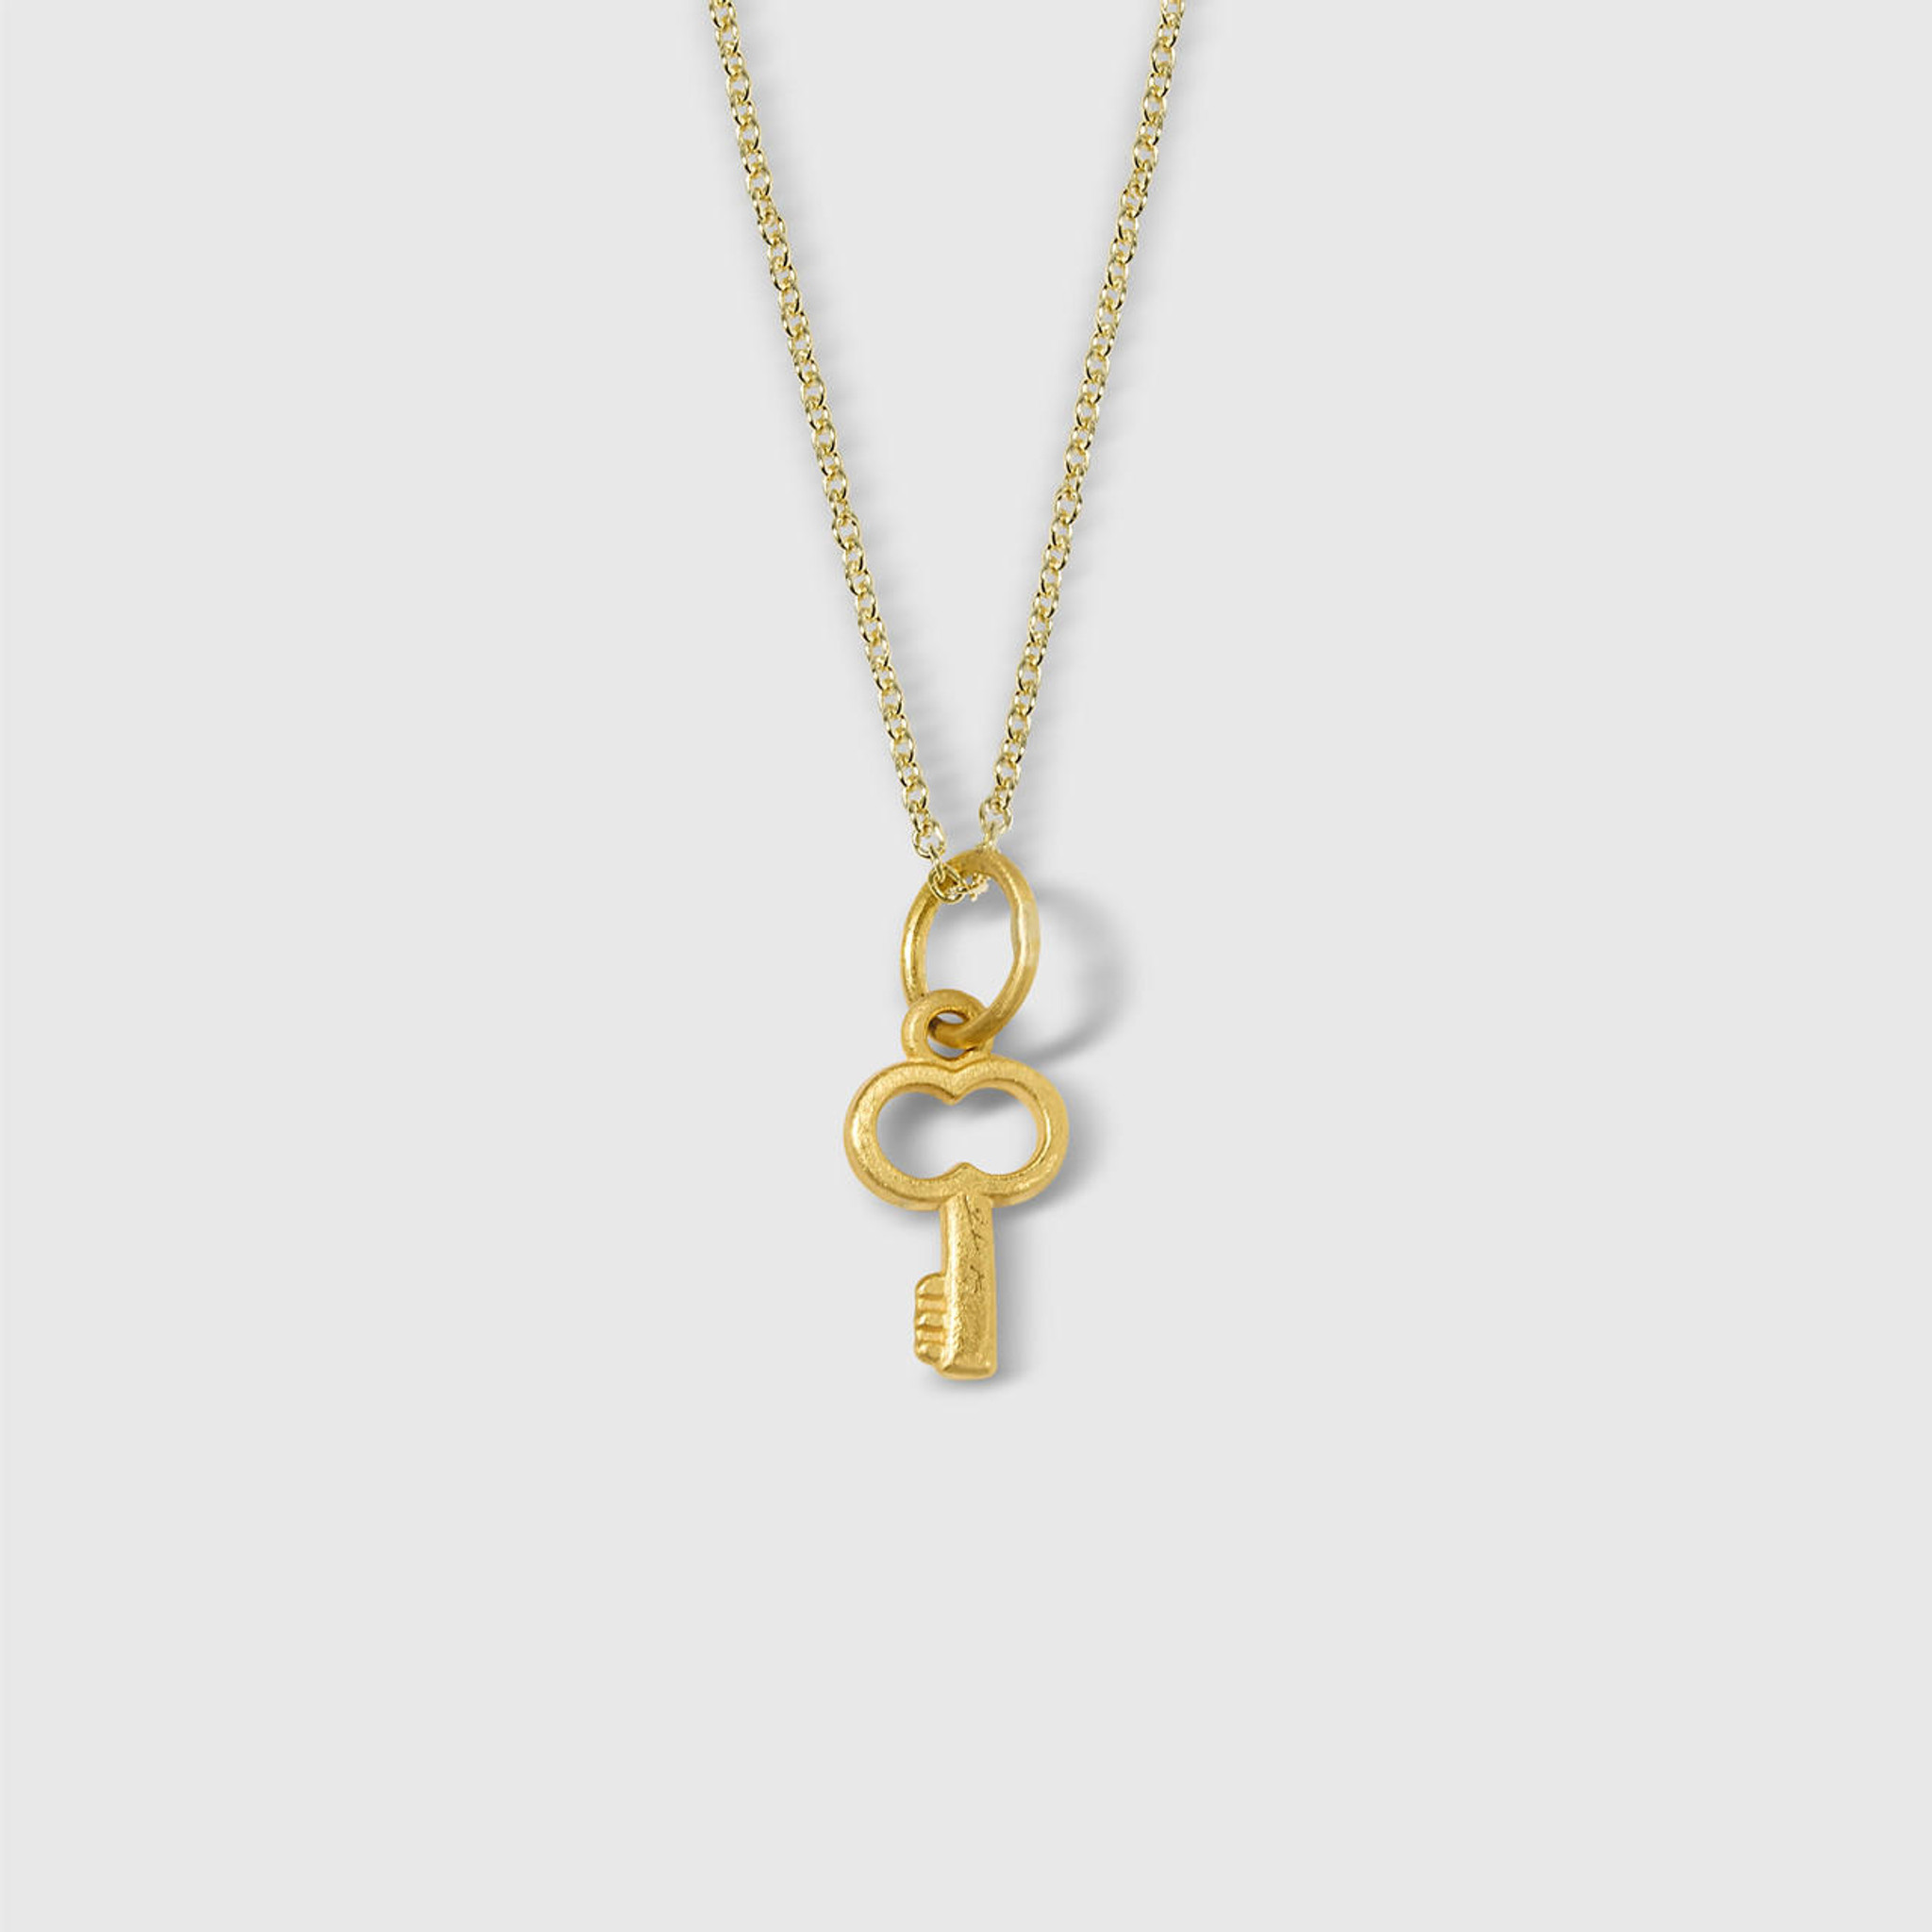 Miniature Key Charm Pendant Necklace, 24kt Solid Gold Prehistoric Works elk & HAMMER